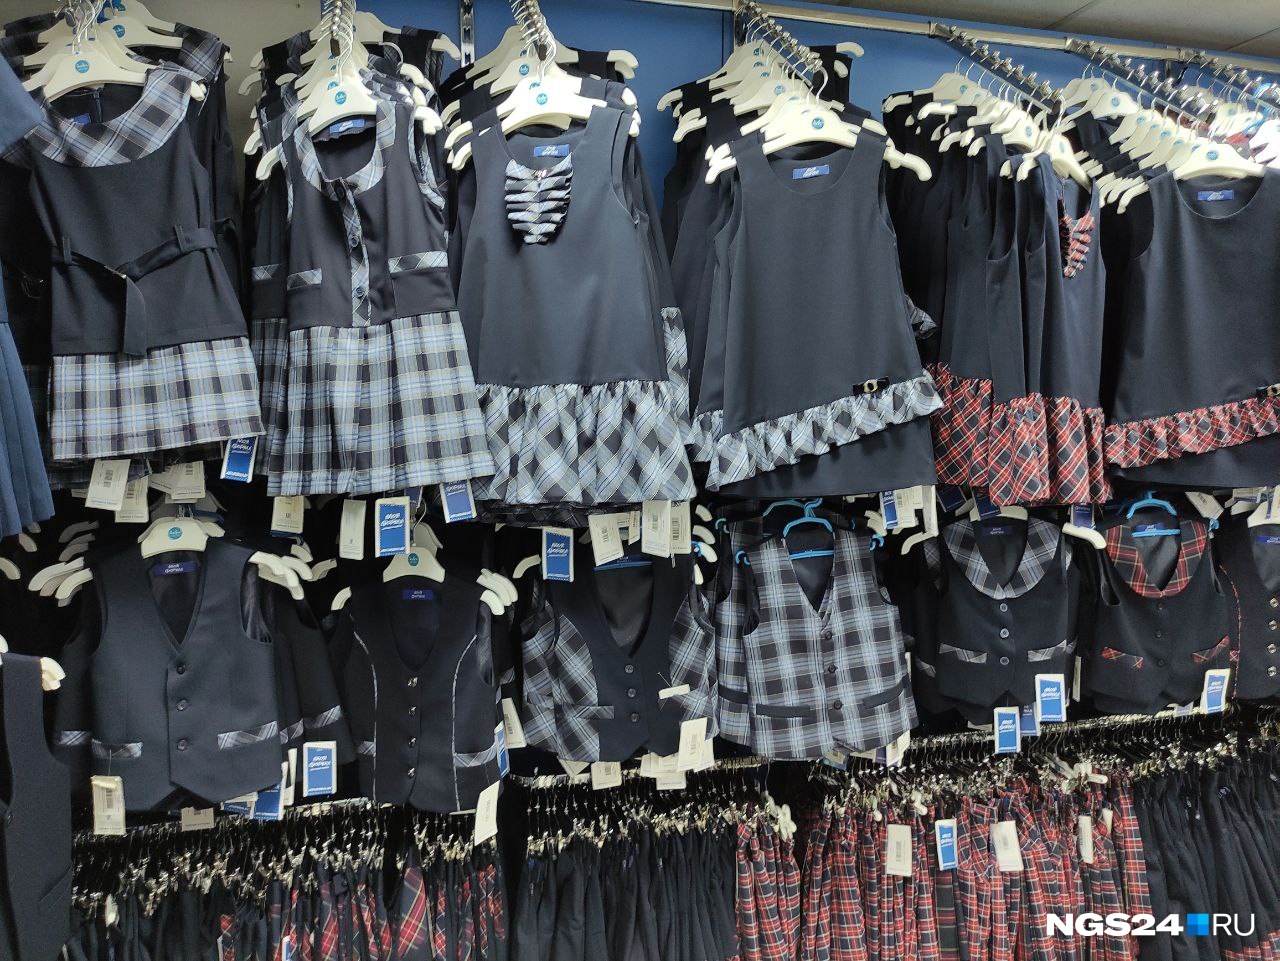 В магазине «Моя форма» можно найти и такие модели. Как правило, школы покупают одинаковые варианты одежды для своих учеников централизованно